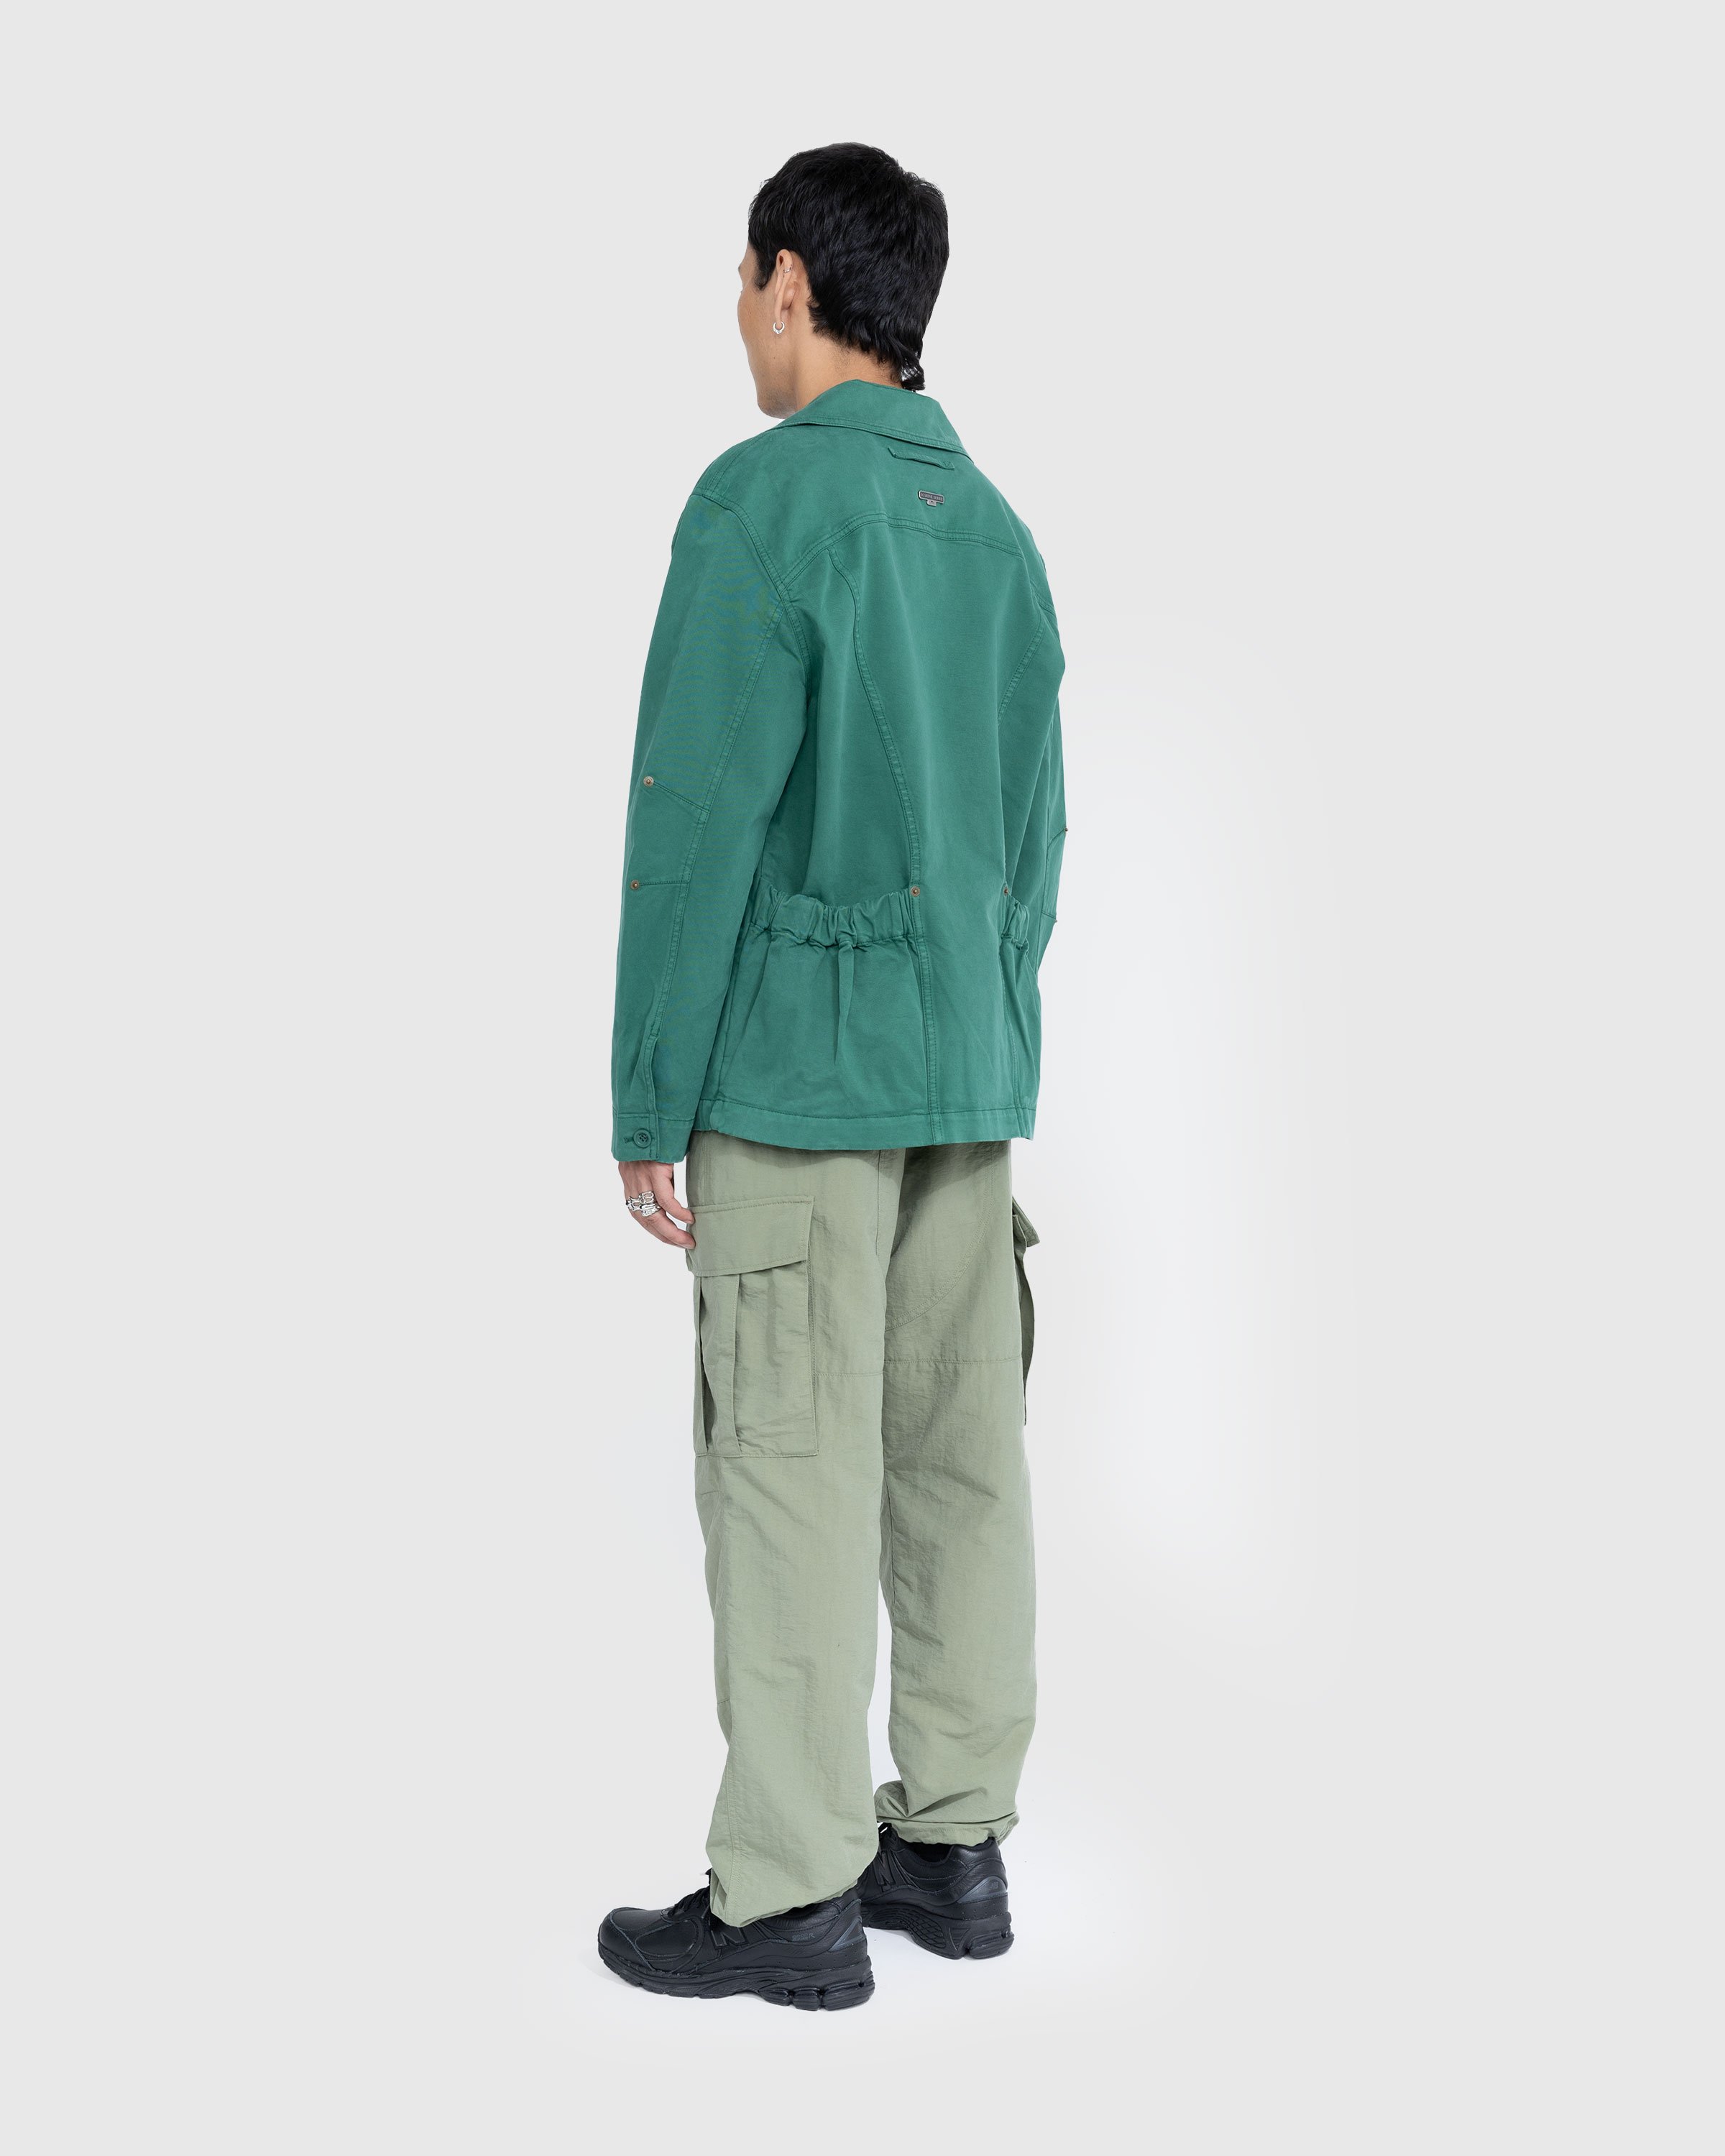 Marine Serre - Workwear Jacket Evergreen - Clothing - Green - Image 4